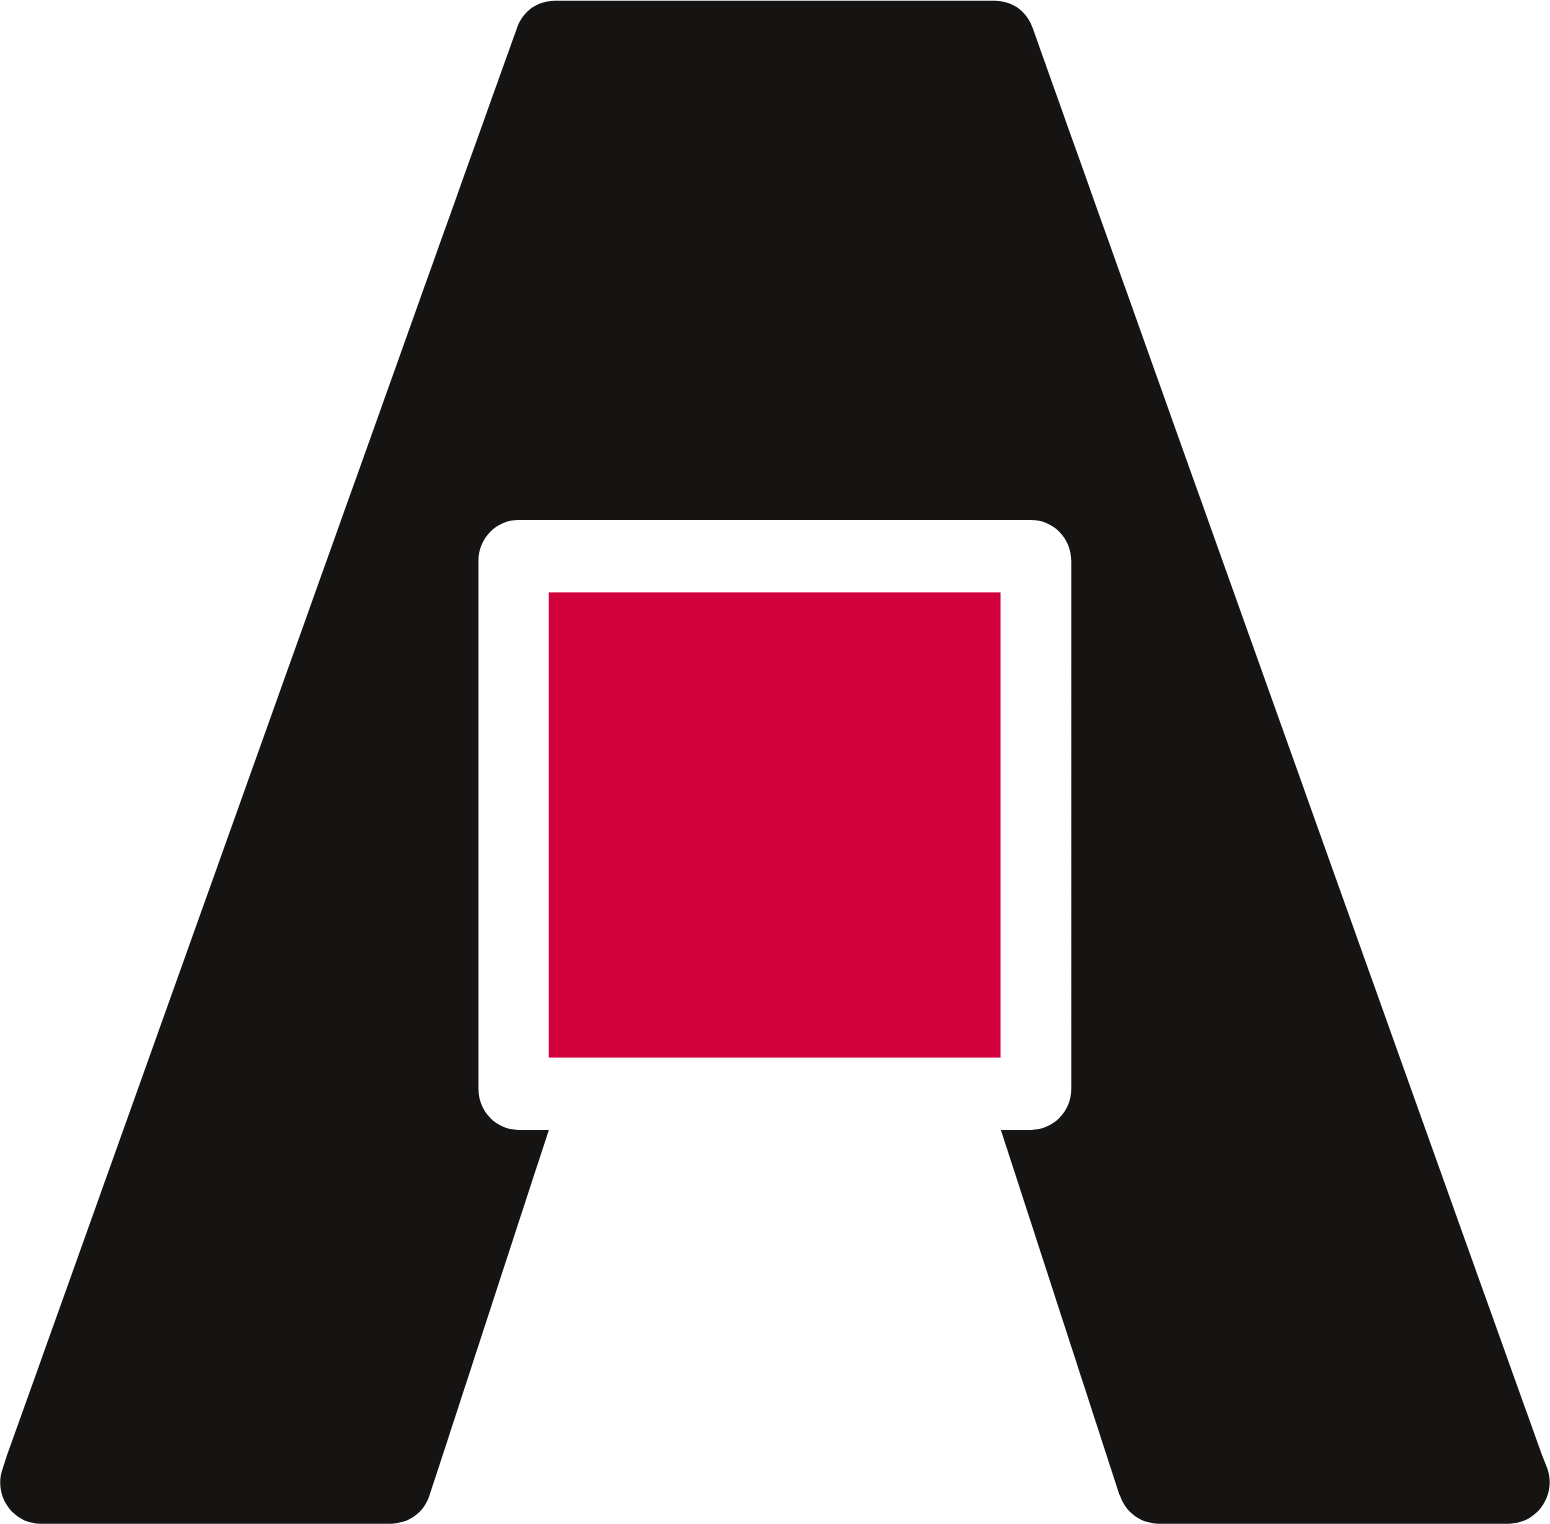 Shurgard Self Storage logo (PNG transparent)